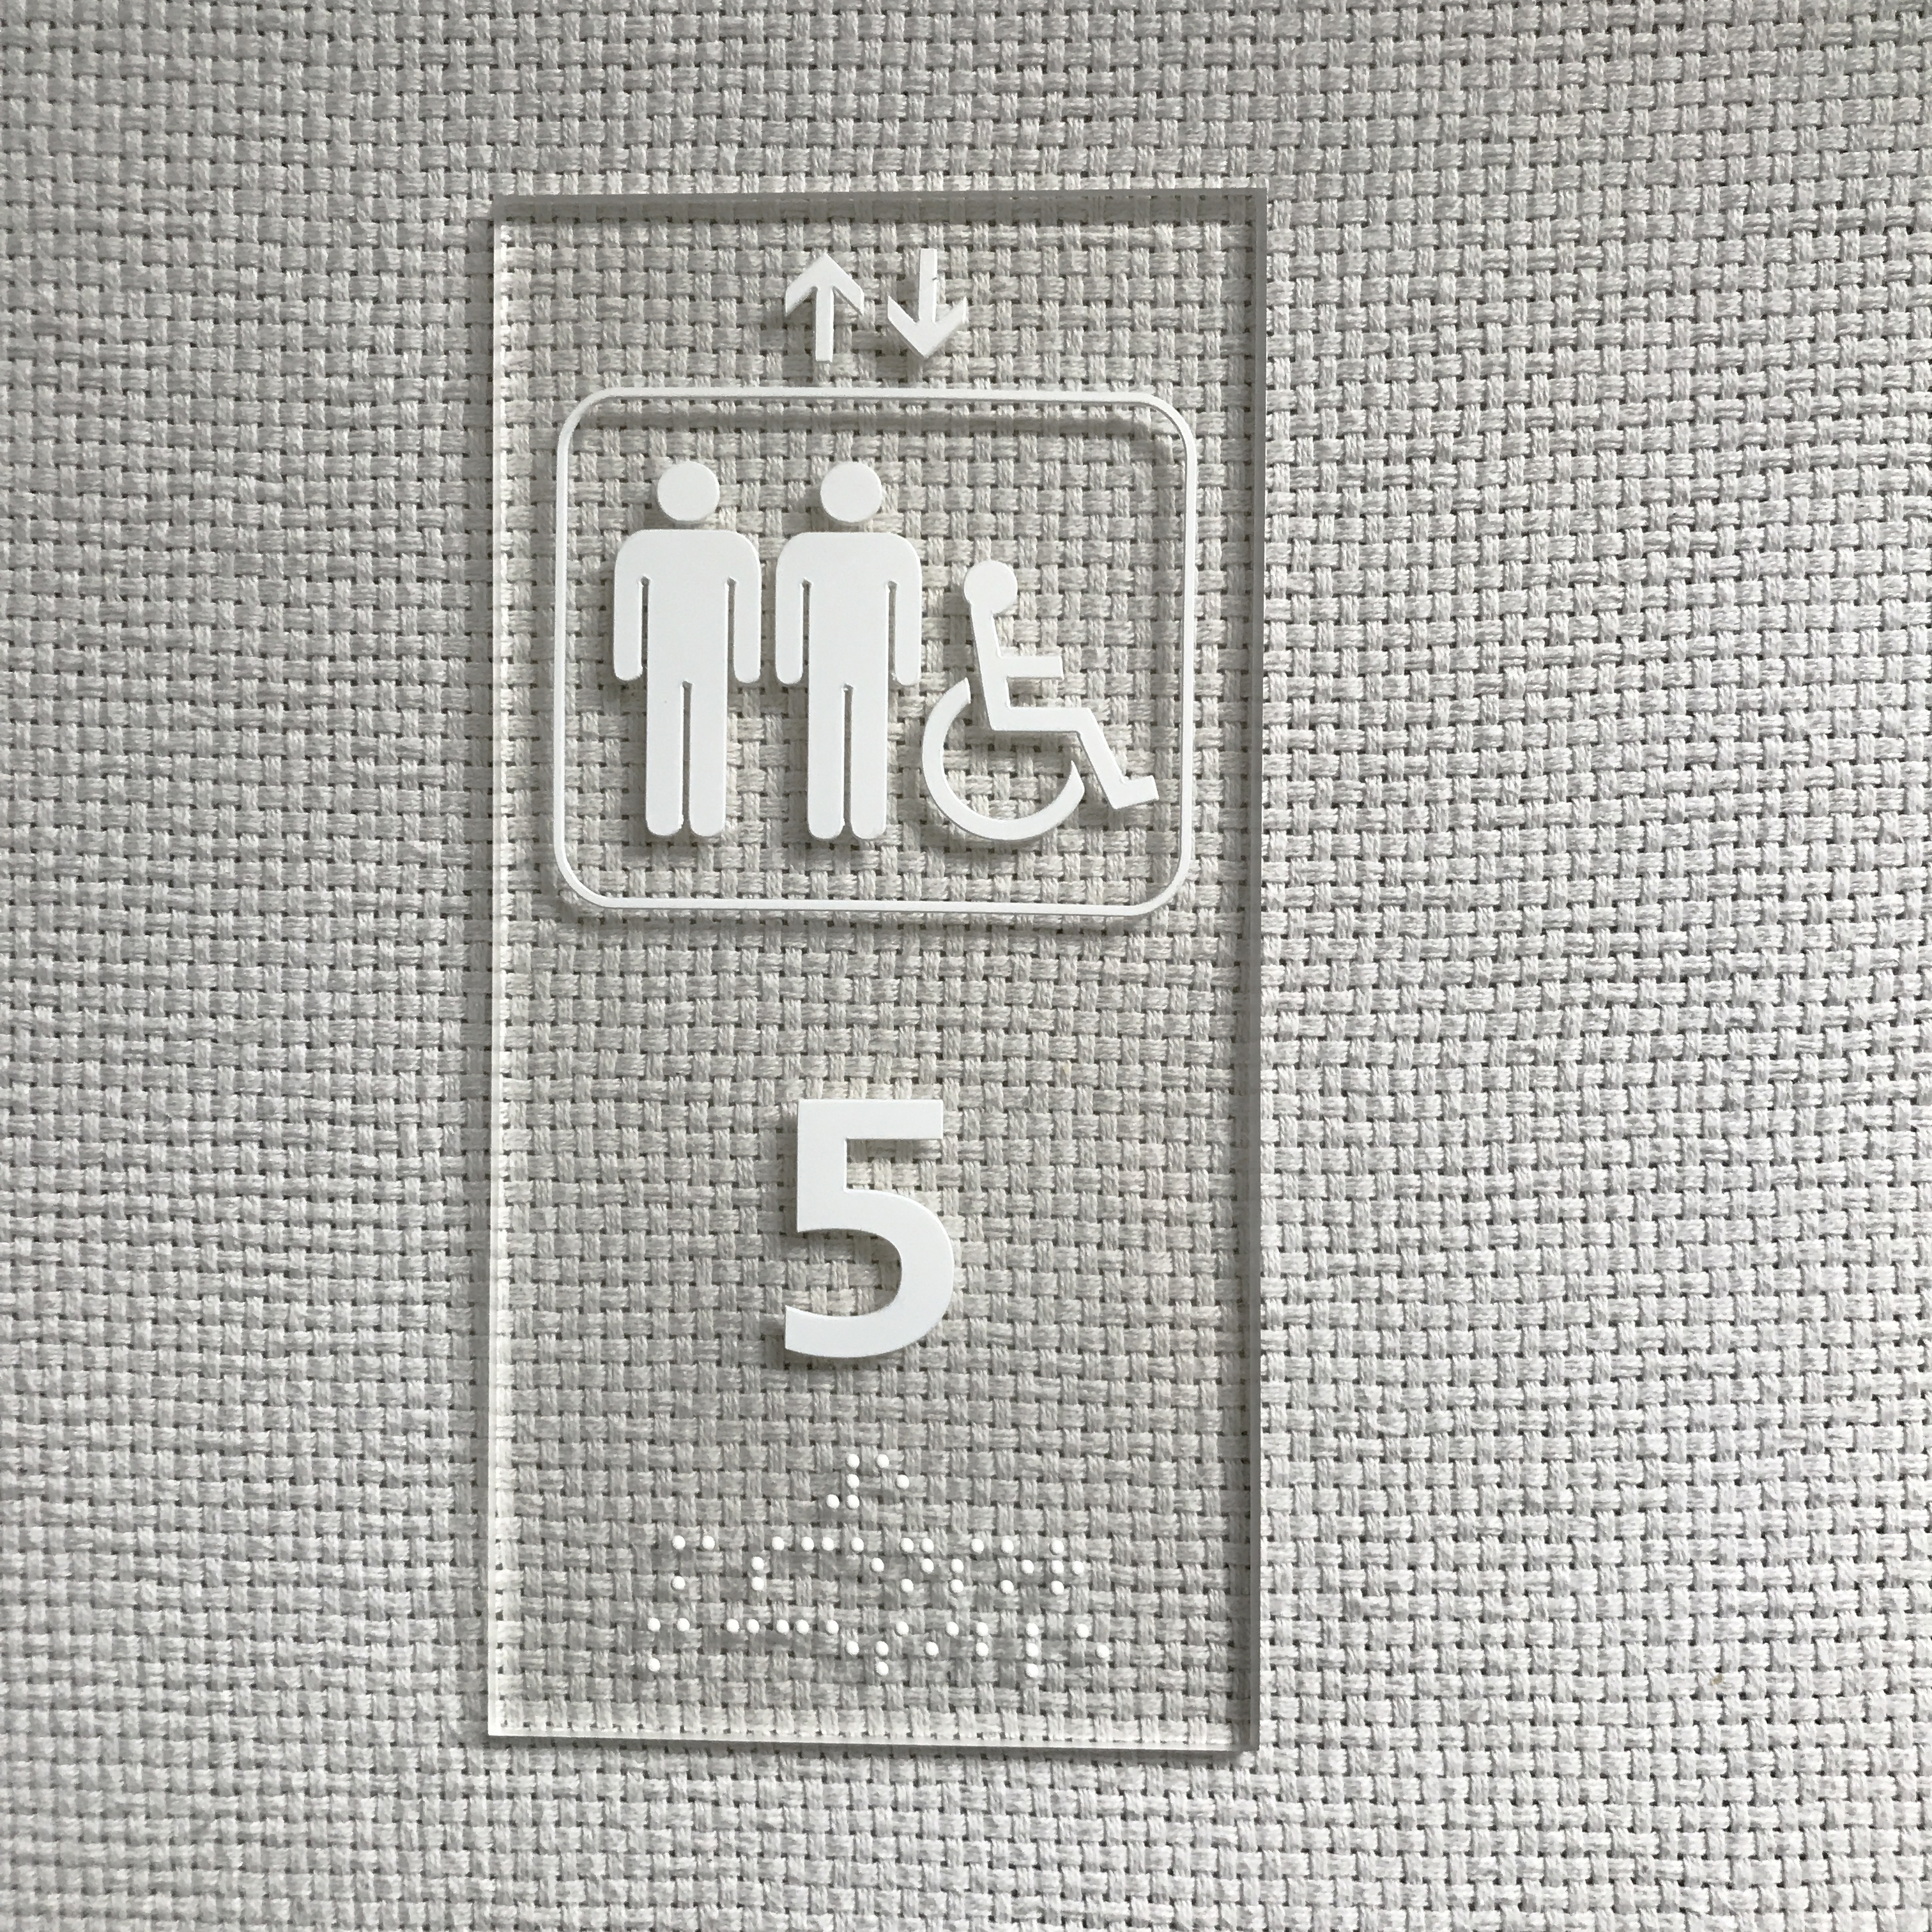 Placas ascensor de metracrilato transparente con braille y altorelieve.